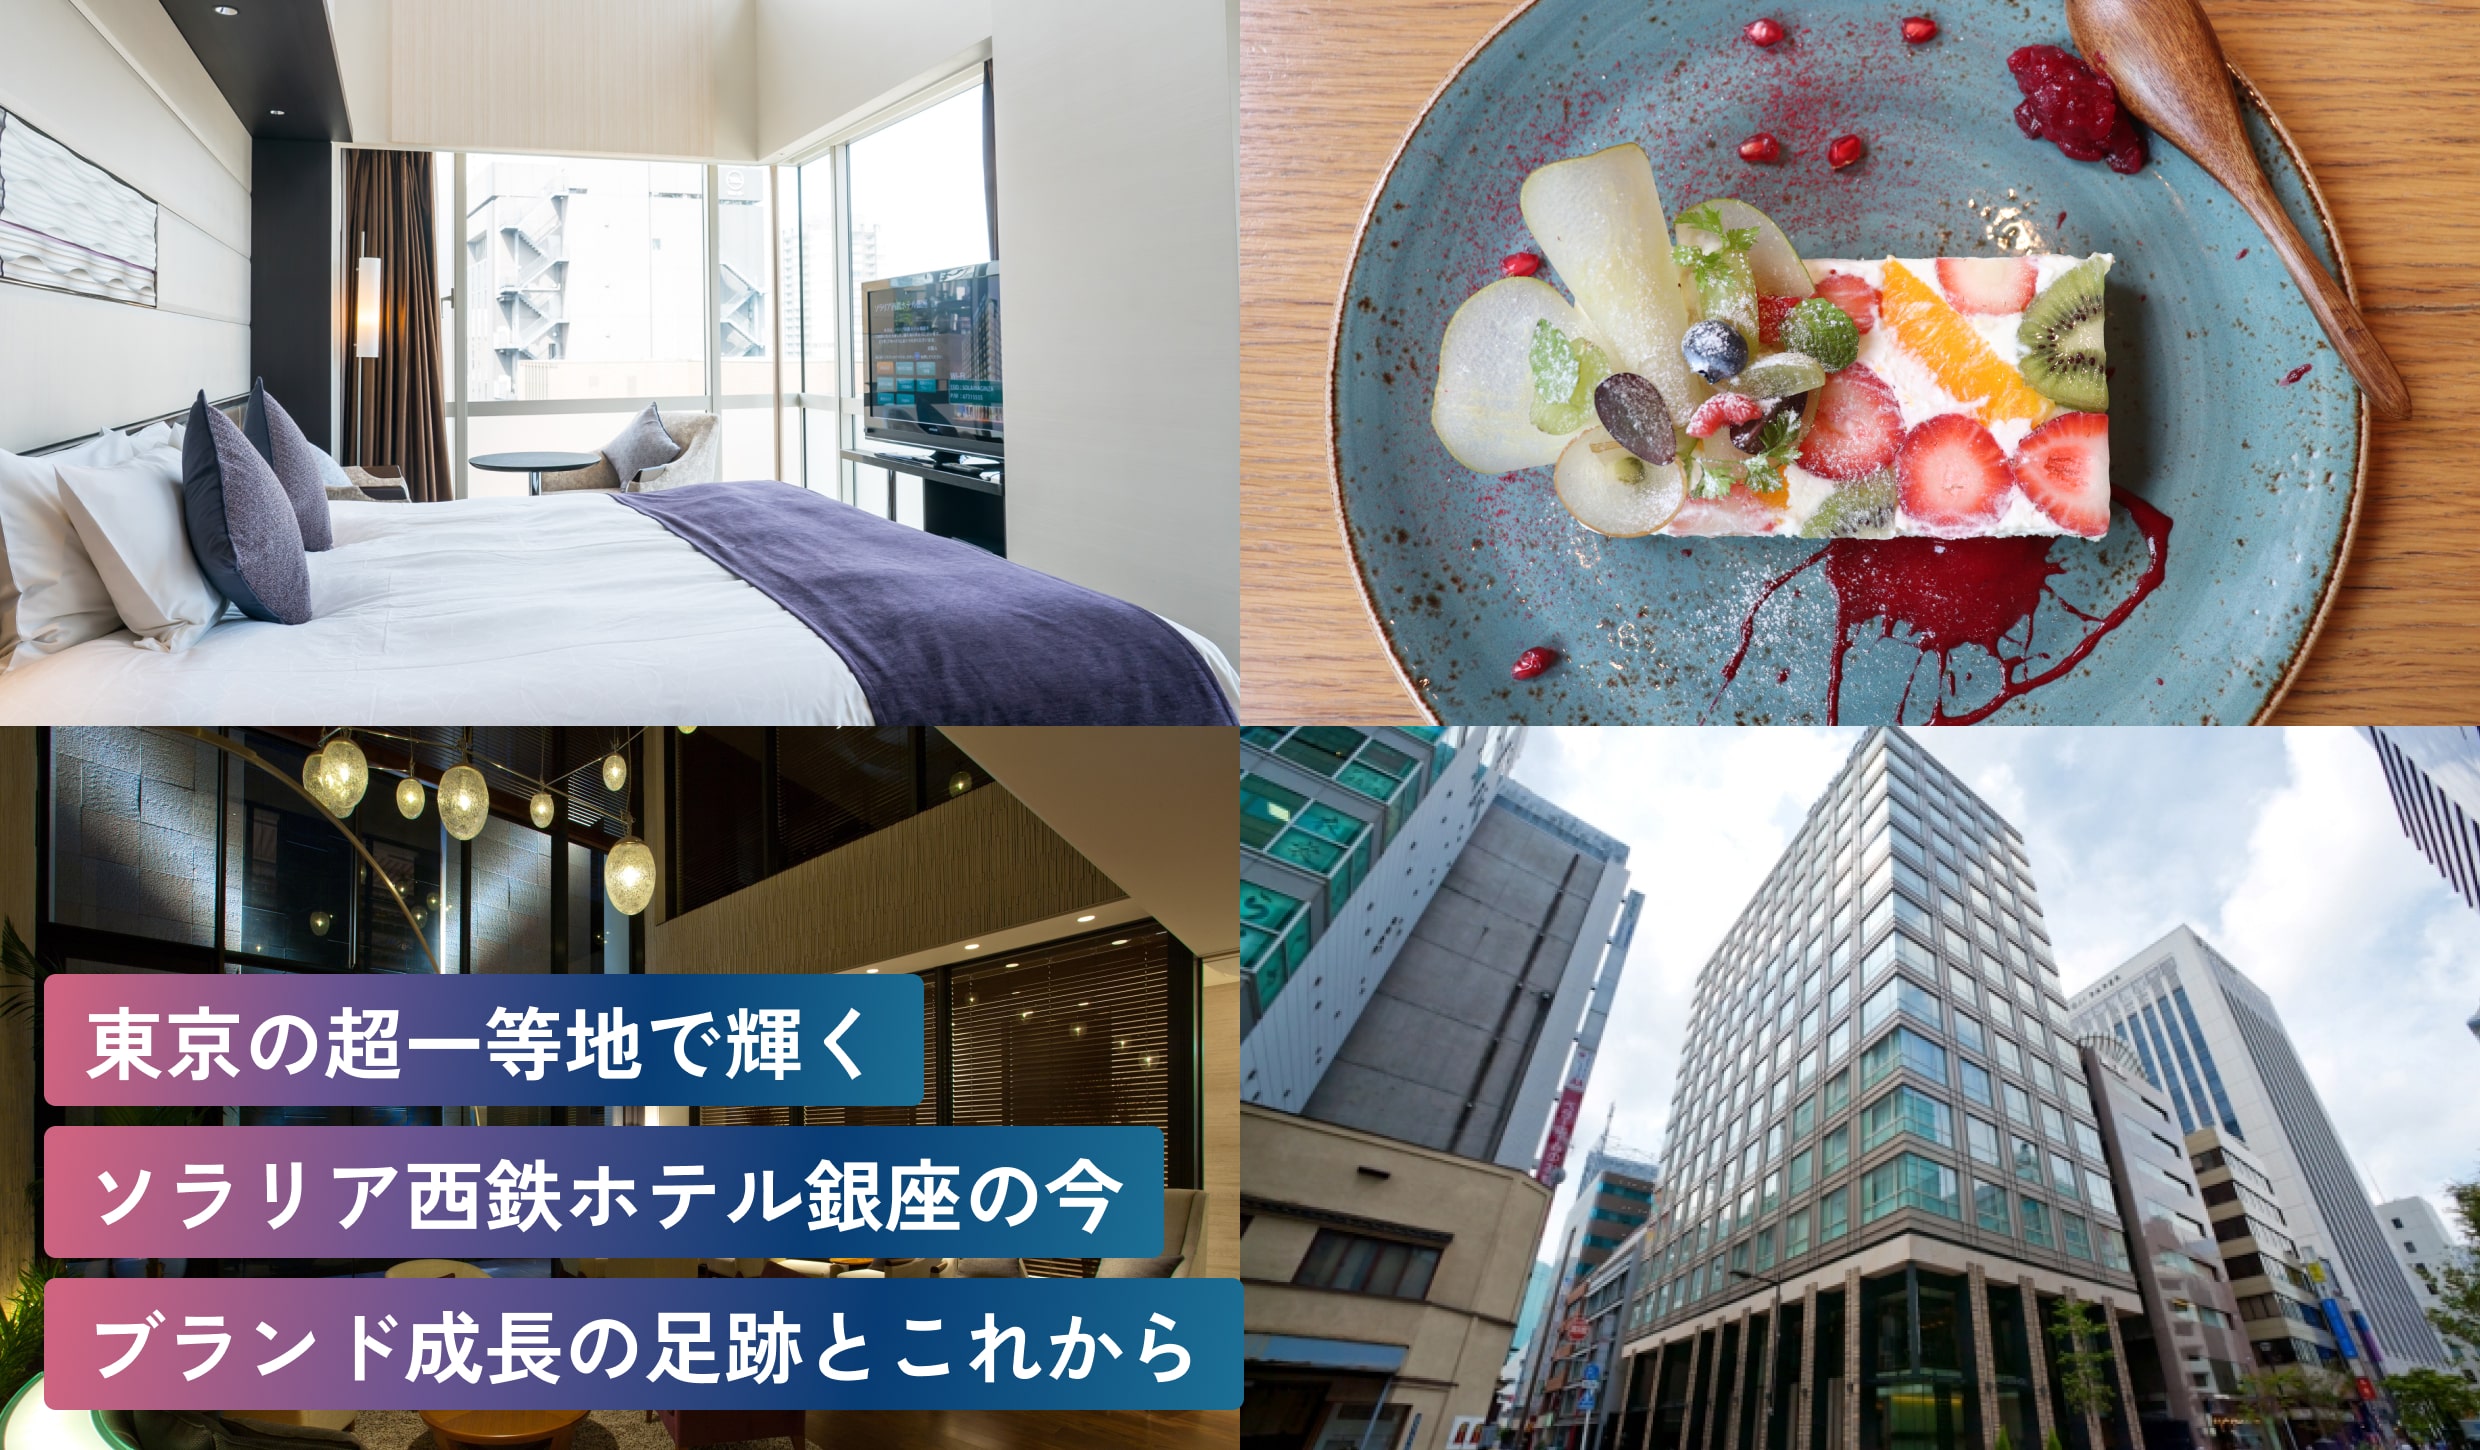 東京の超一等地で輝く
ソラリア西鉄ホテル銀座の今。
ブランド成長の足跡とこれから